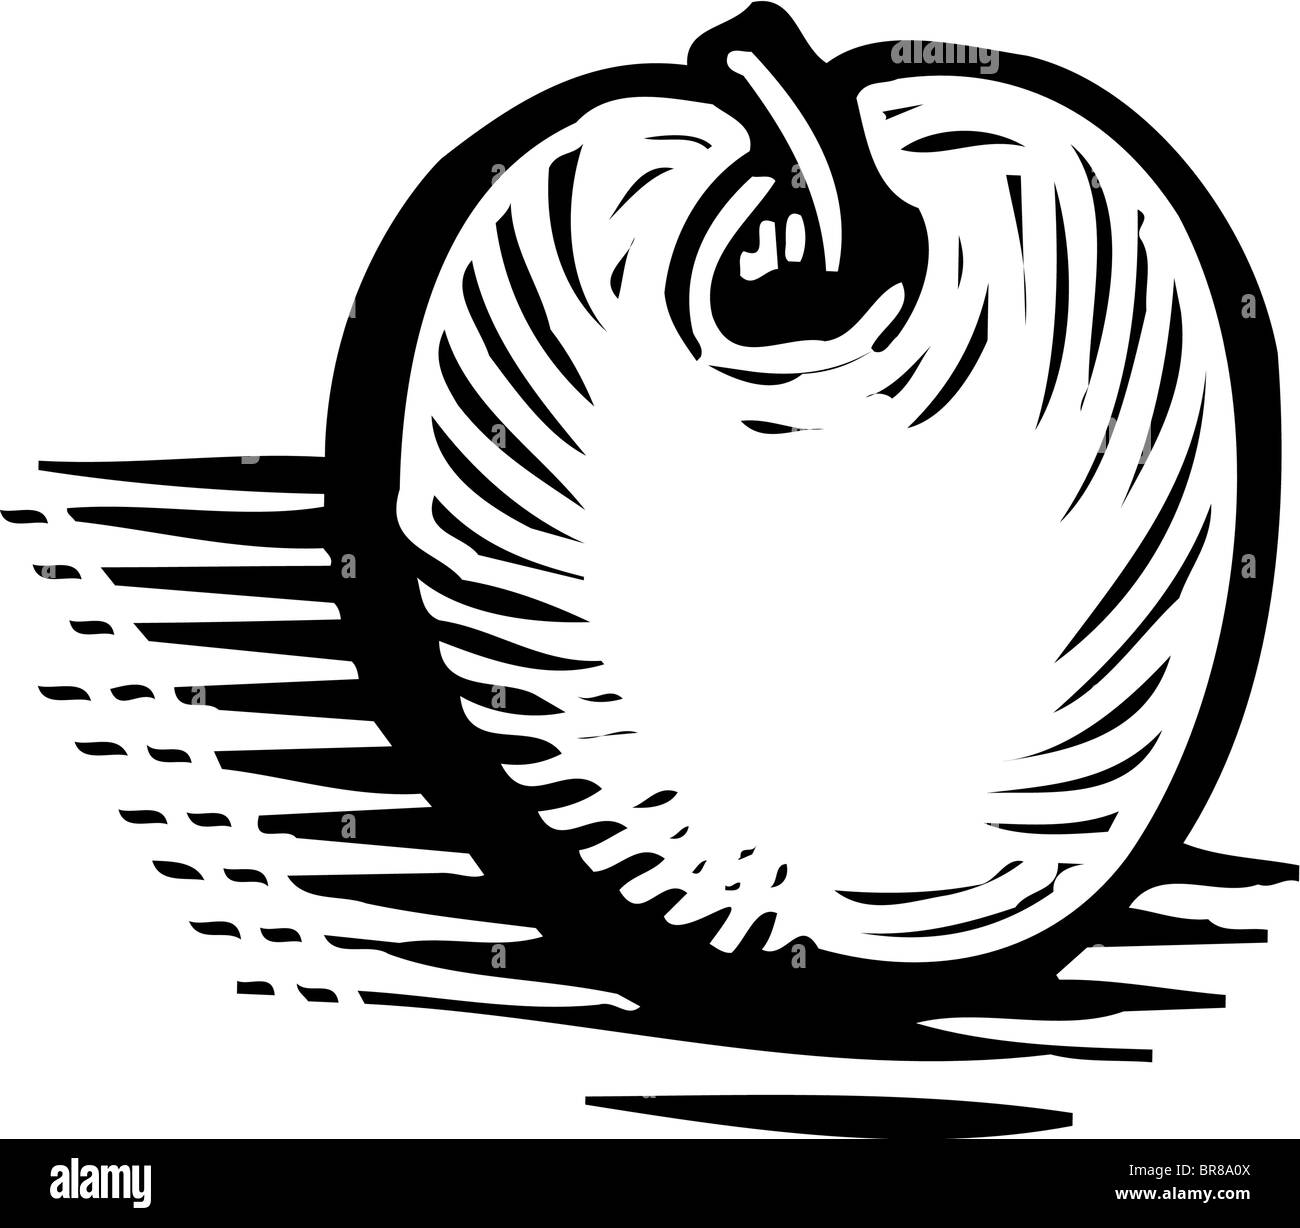 Eine bildliche Darstellung eines Apfels in schwarz / weiß Stockfoto